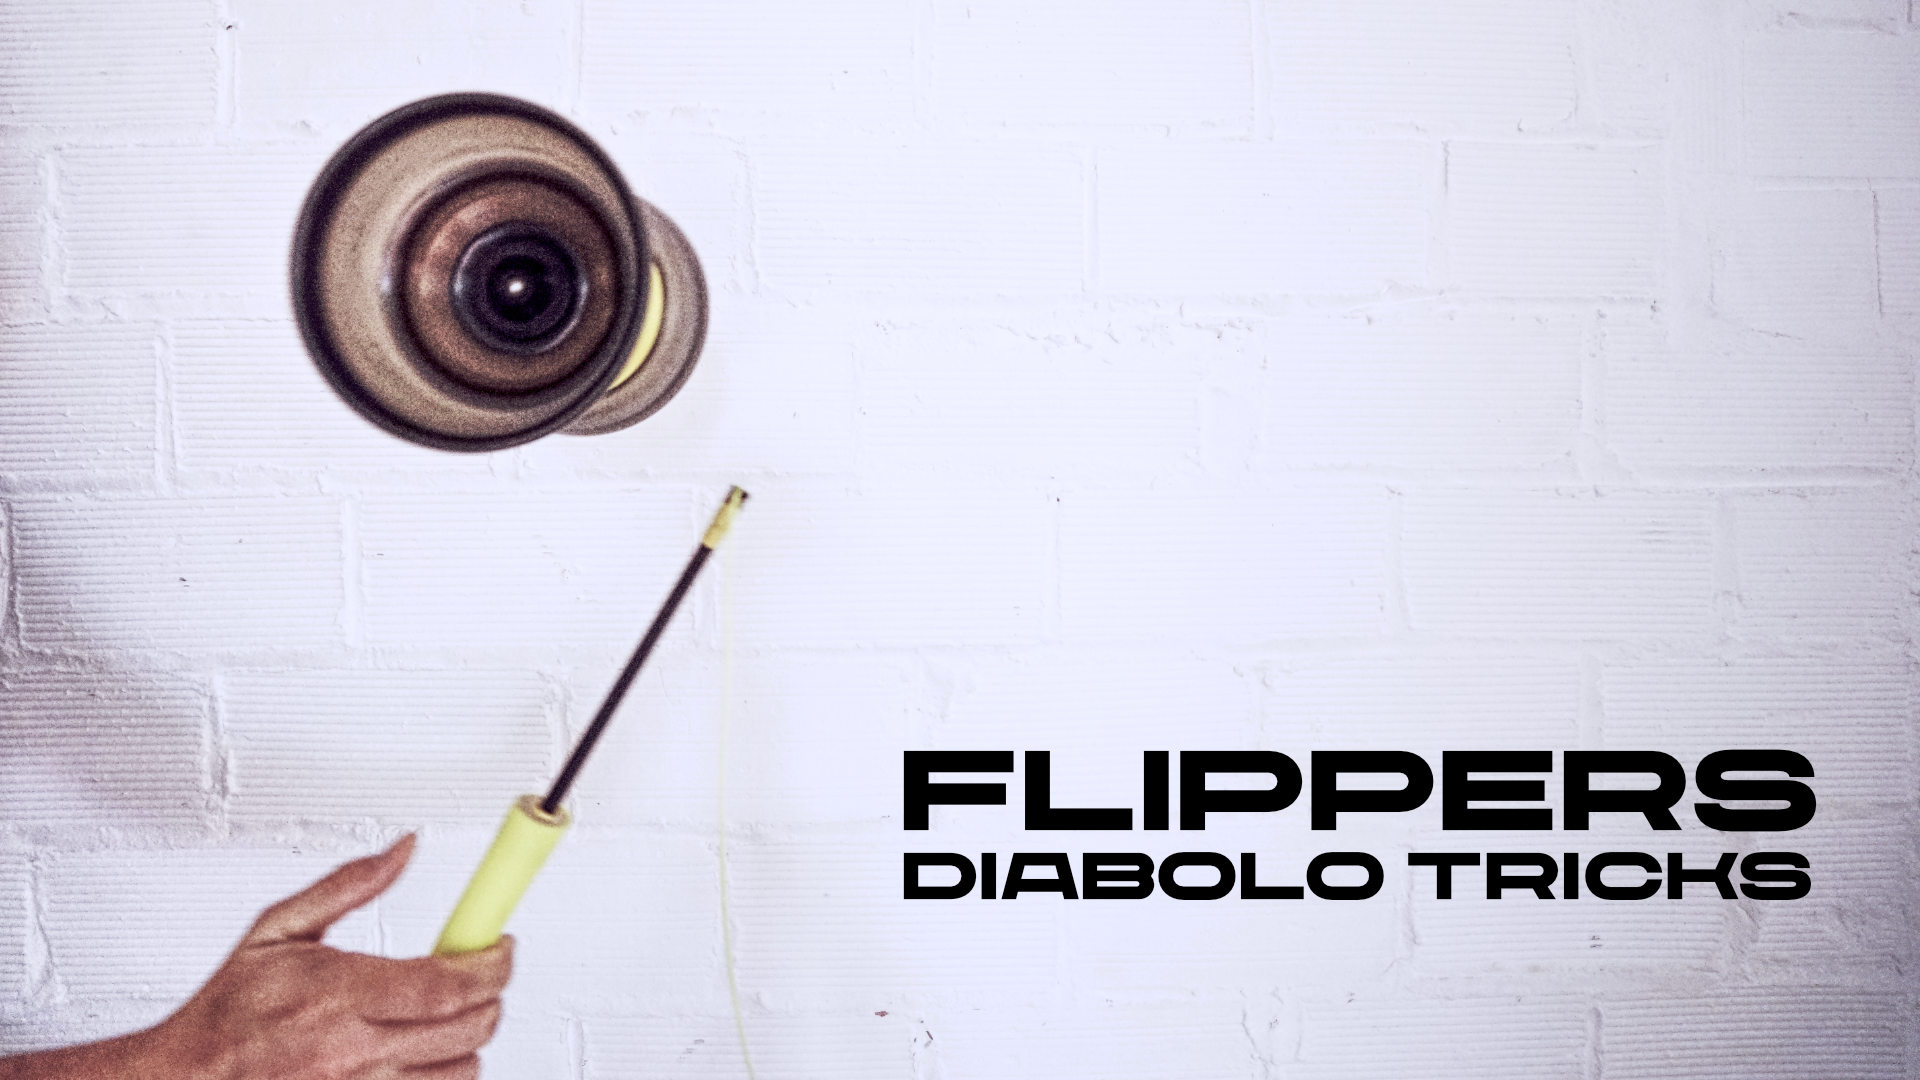 flippers diabolo tricks blog troposferaxyz by didac gilabert 1